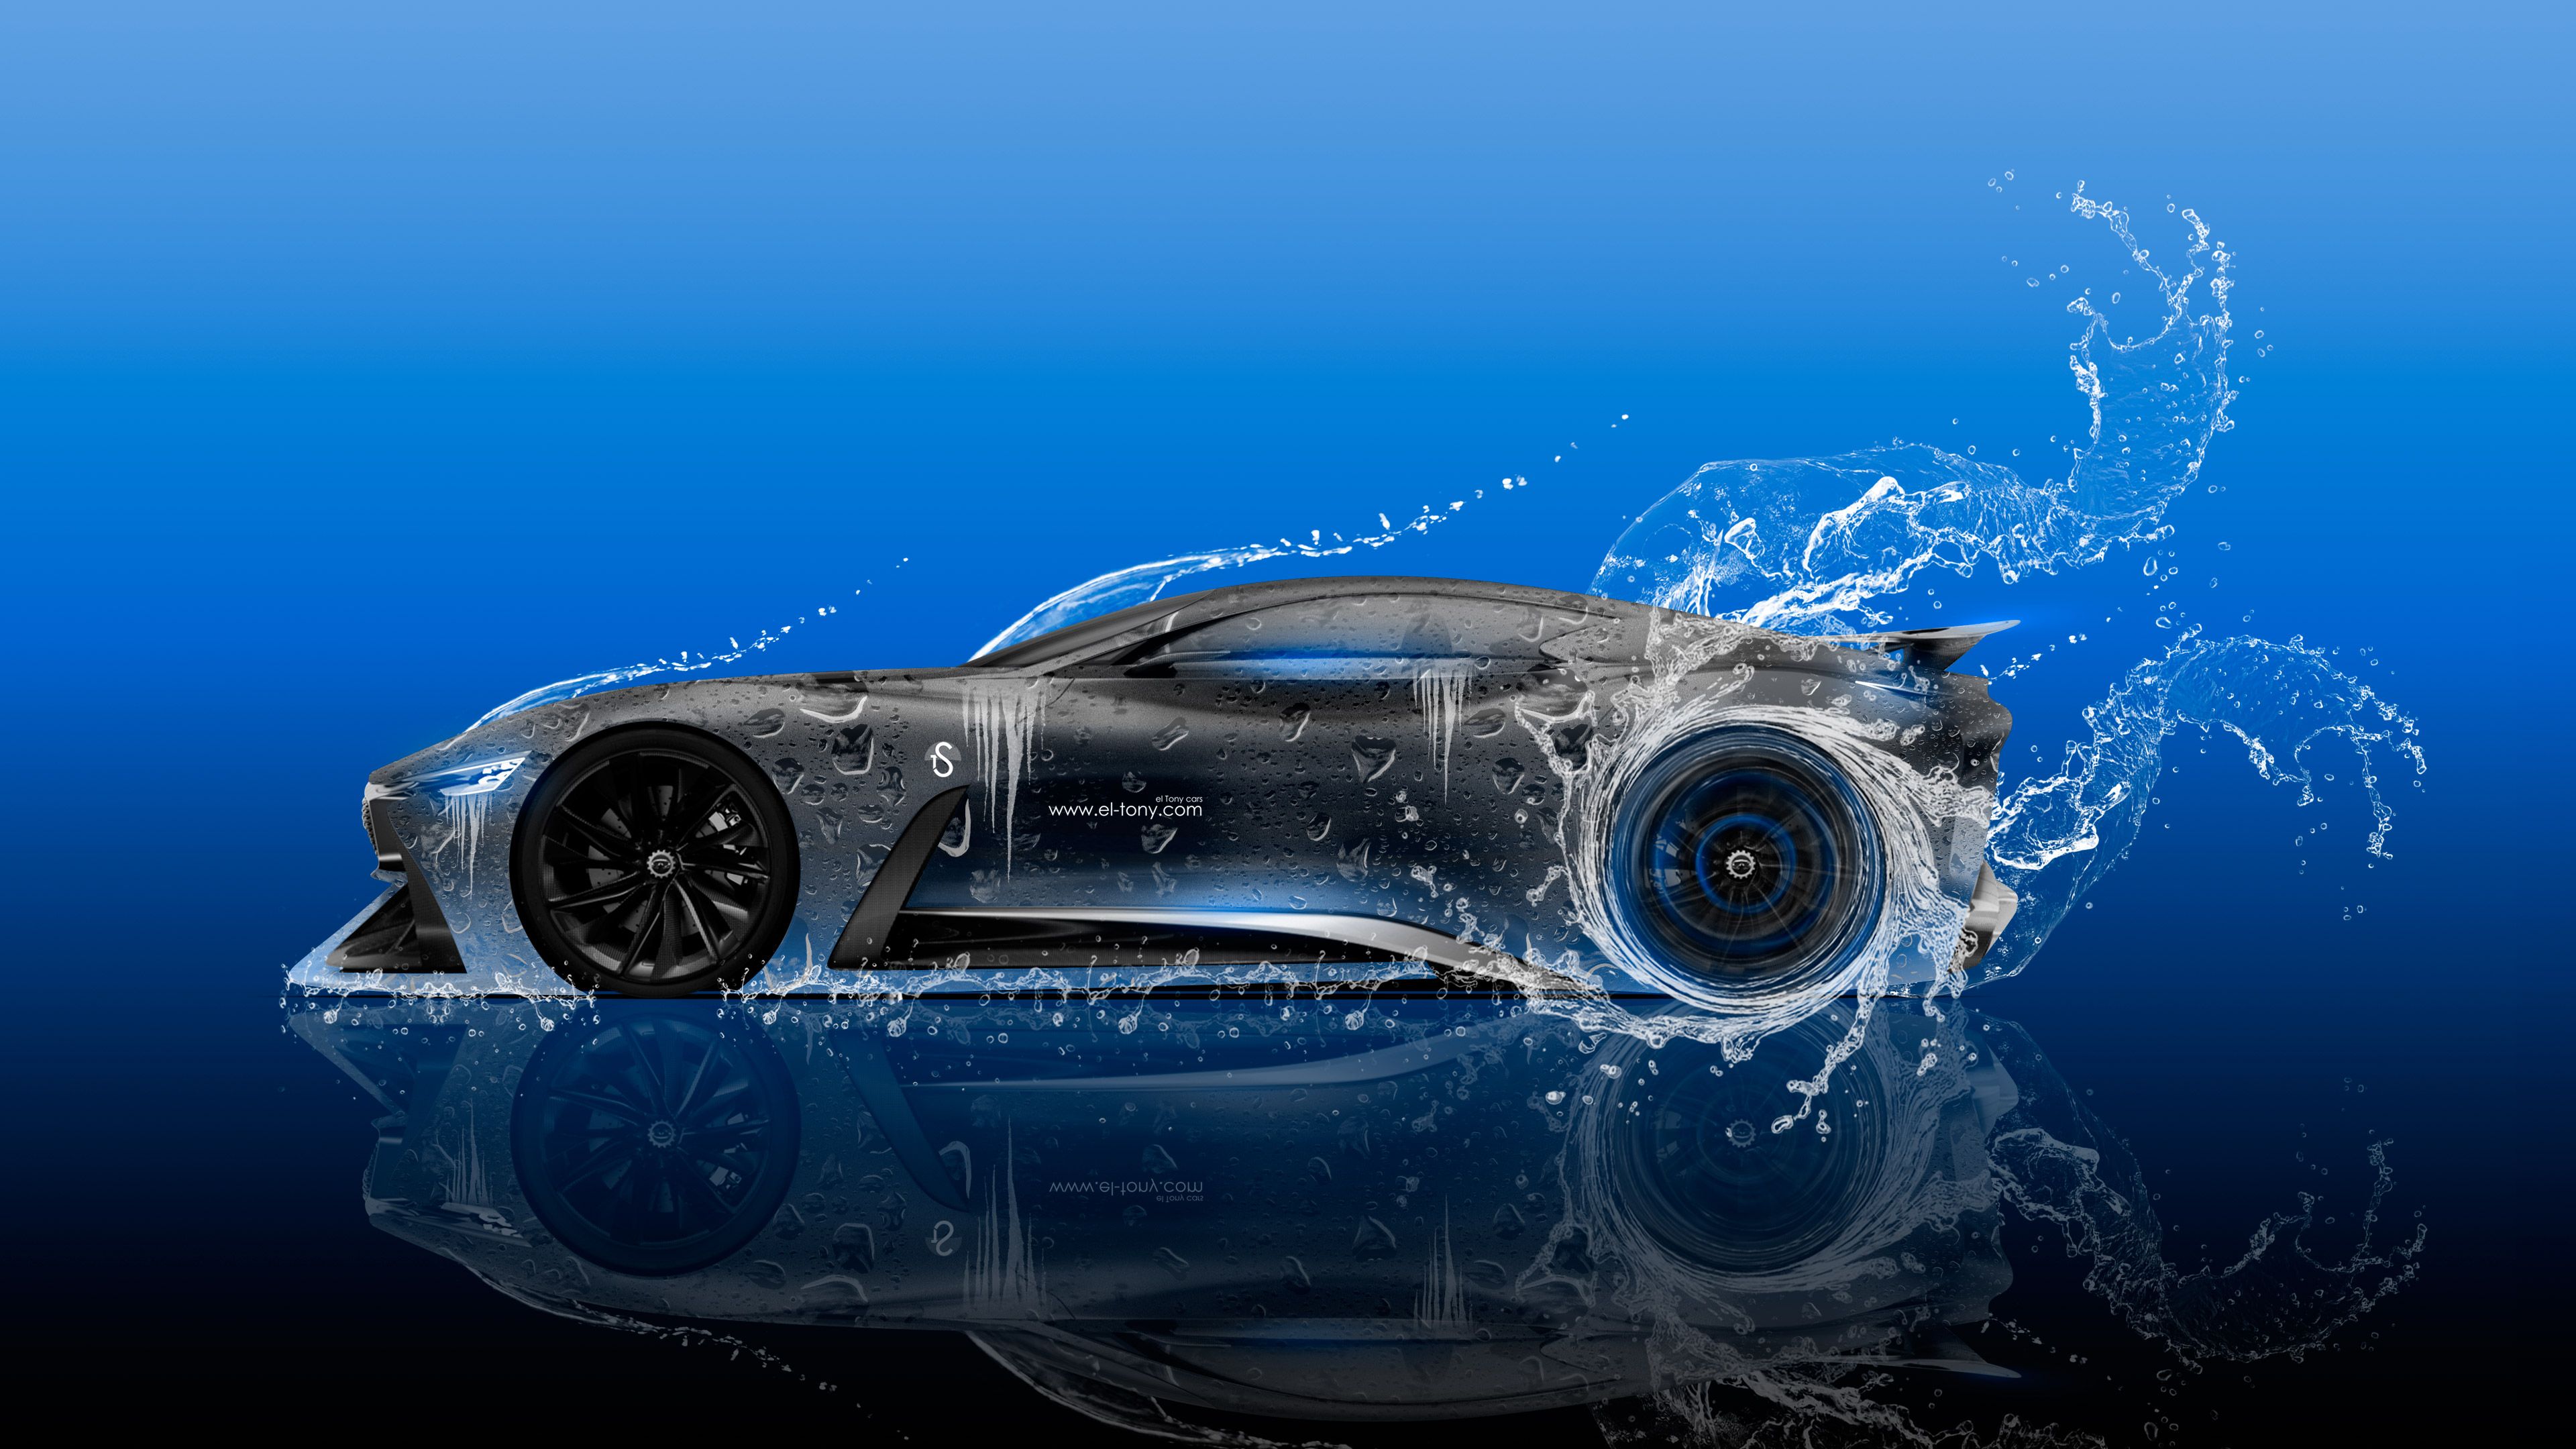 Infiniti Vision Gran Turismo Side Super Water Car 2015 Wallpaper el Tony Cars